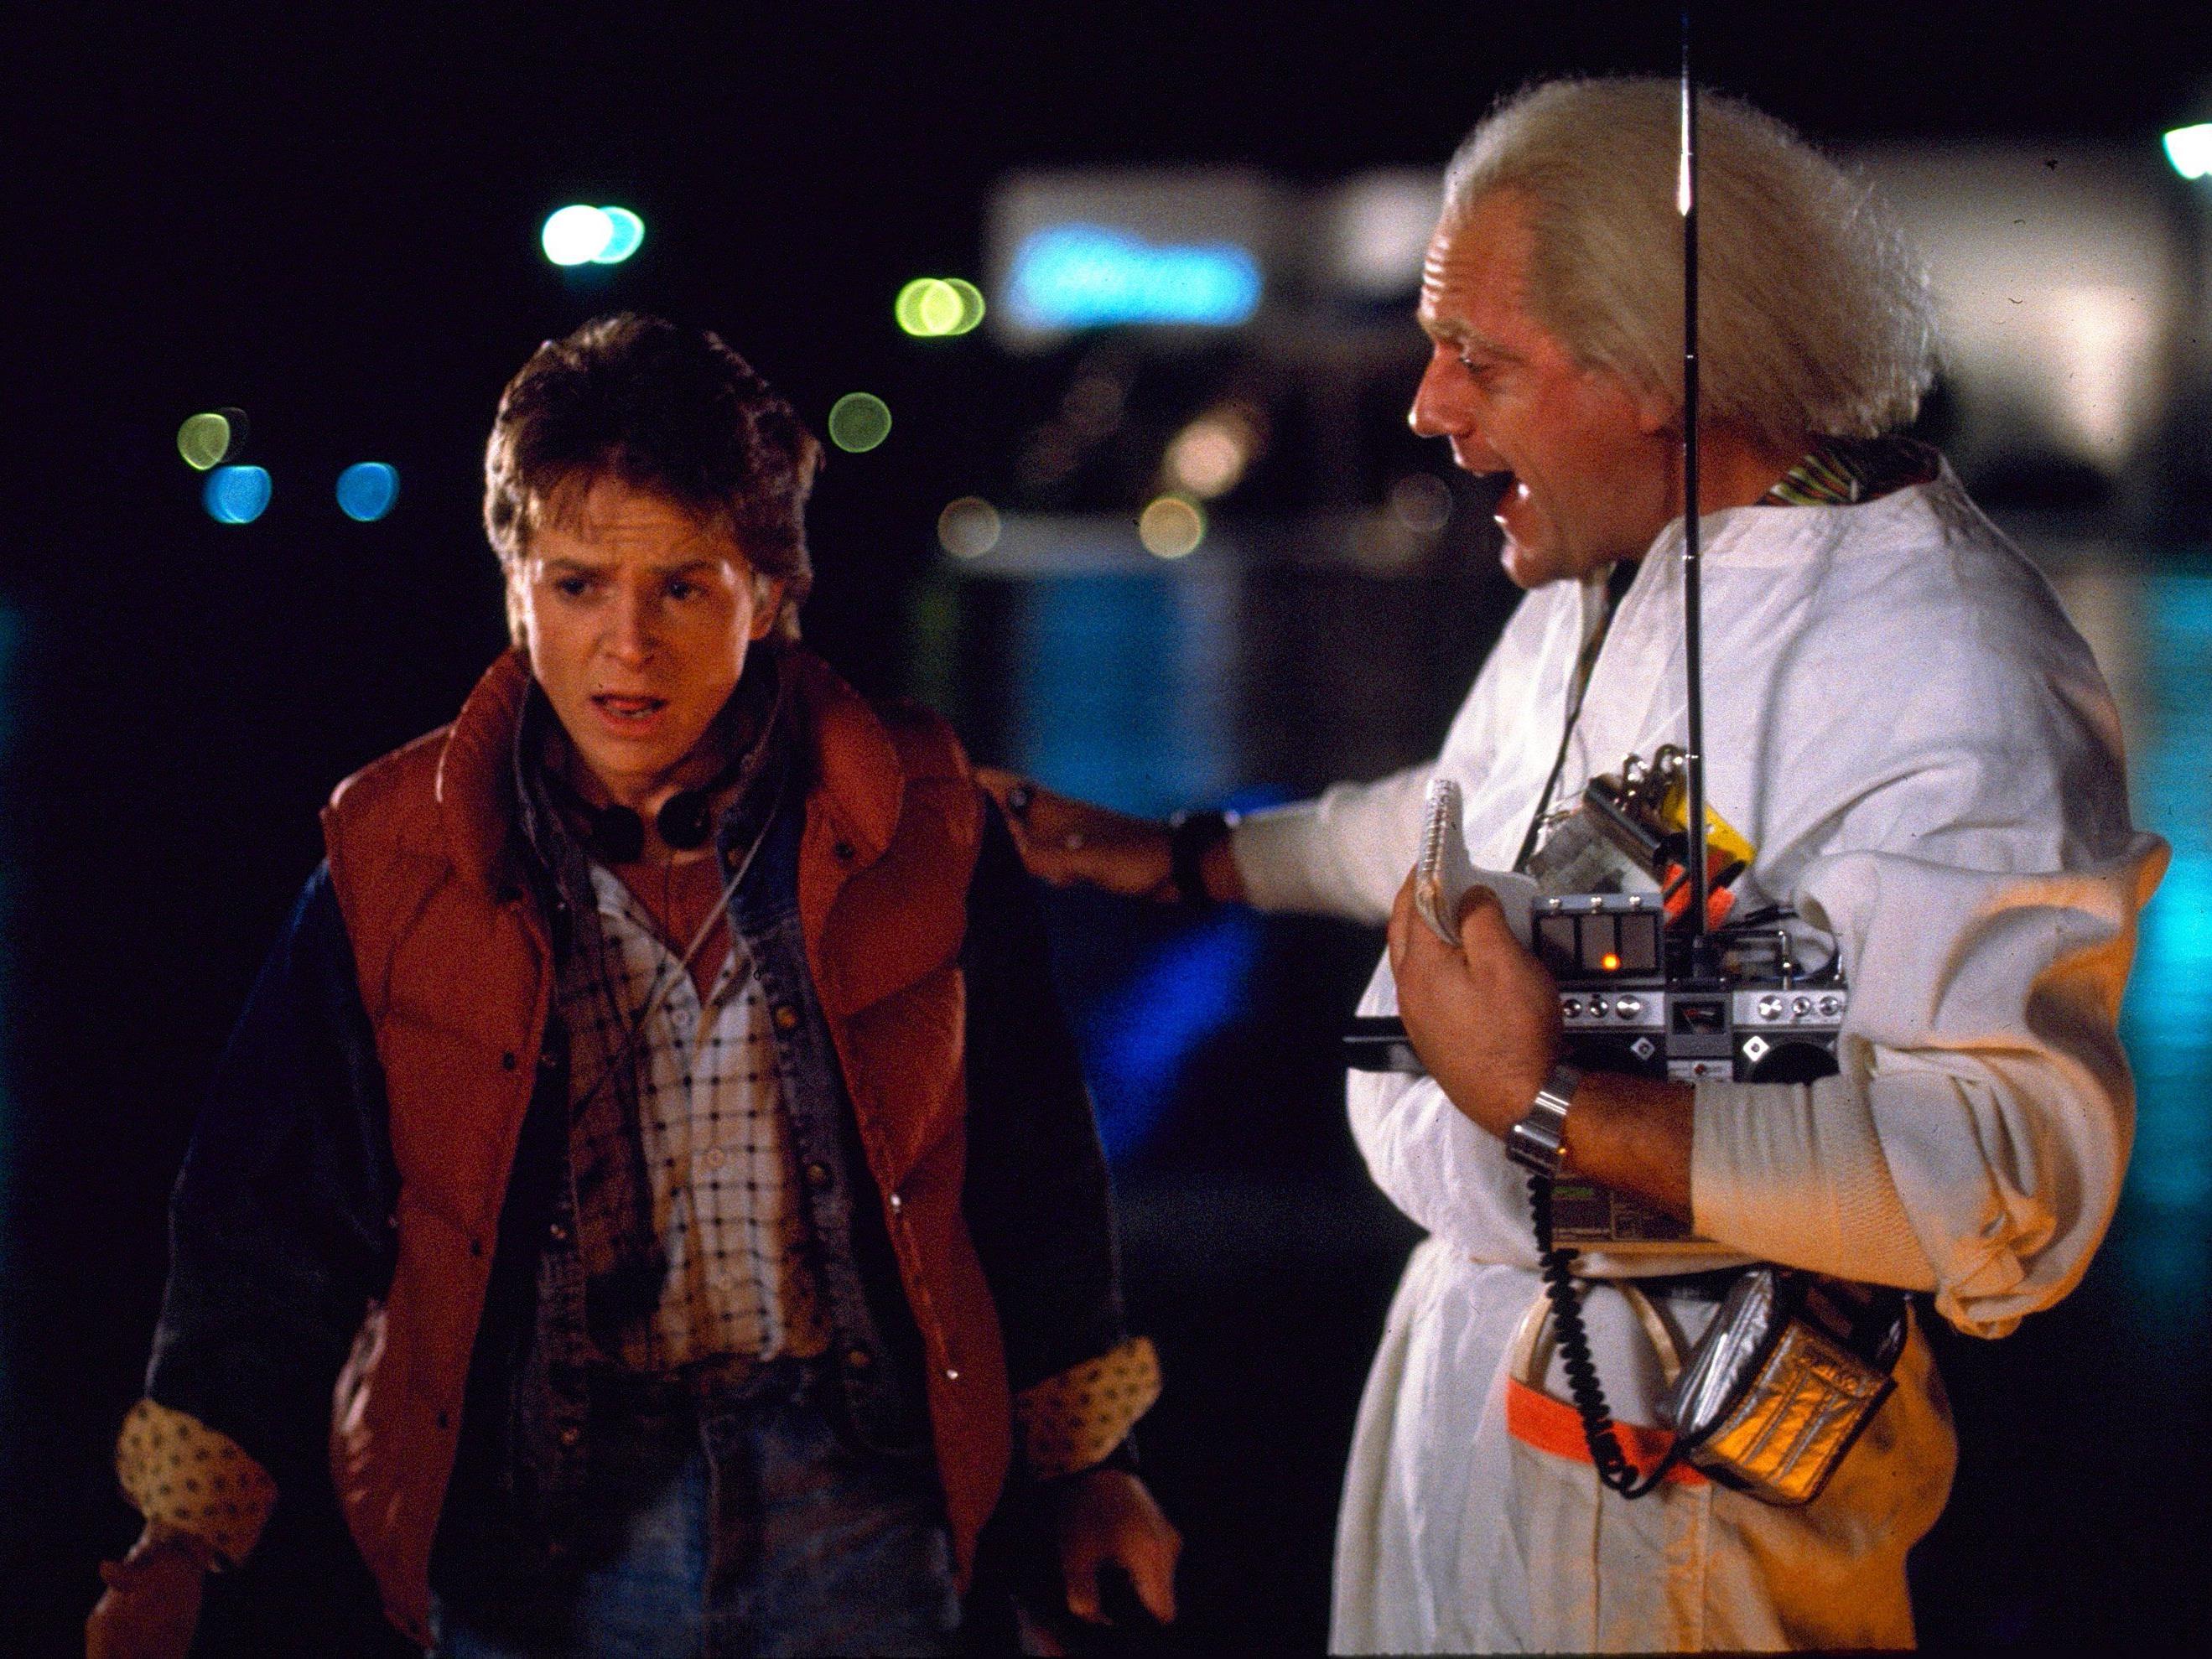 "Zurück in die Zukunft": 2015 als das Jahr, in das Marty McFly reiste